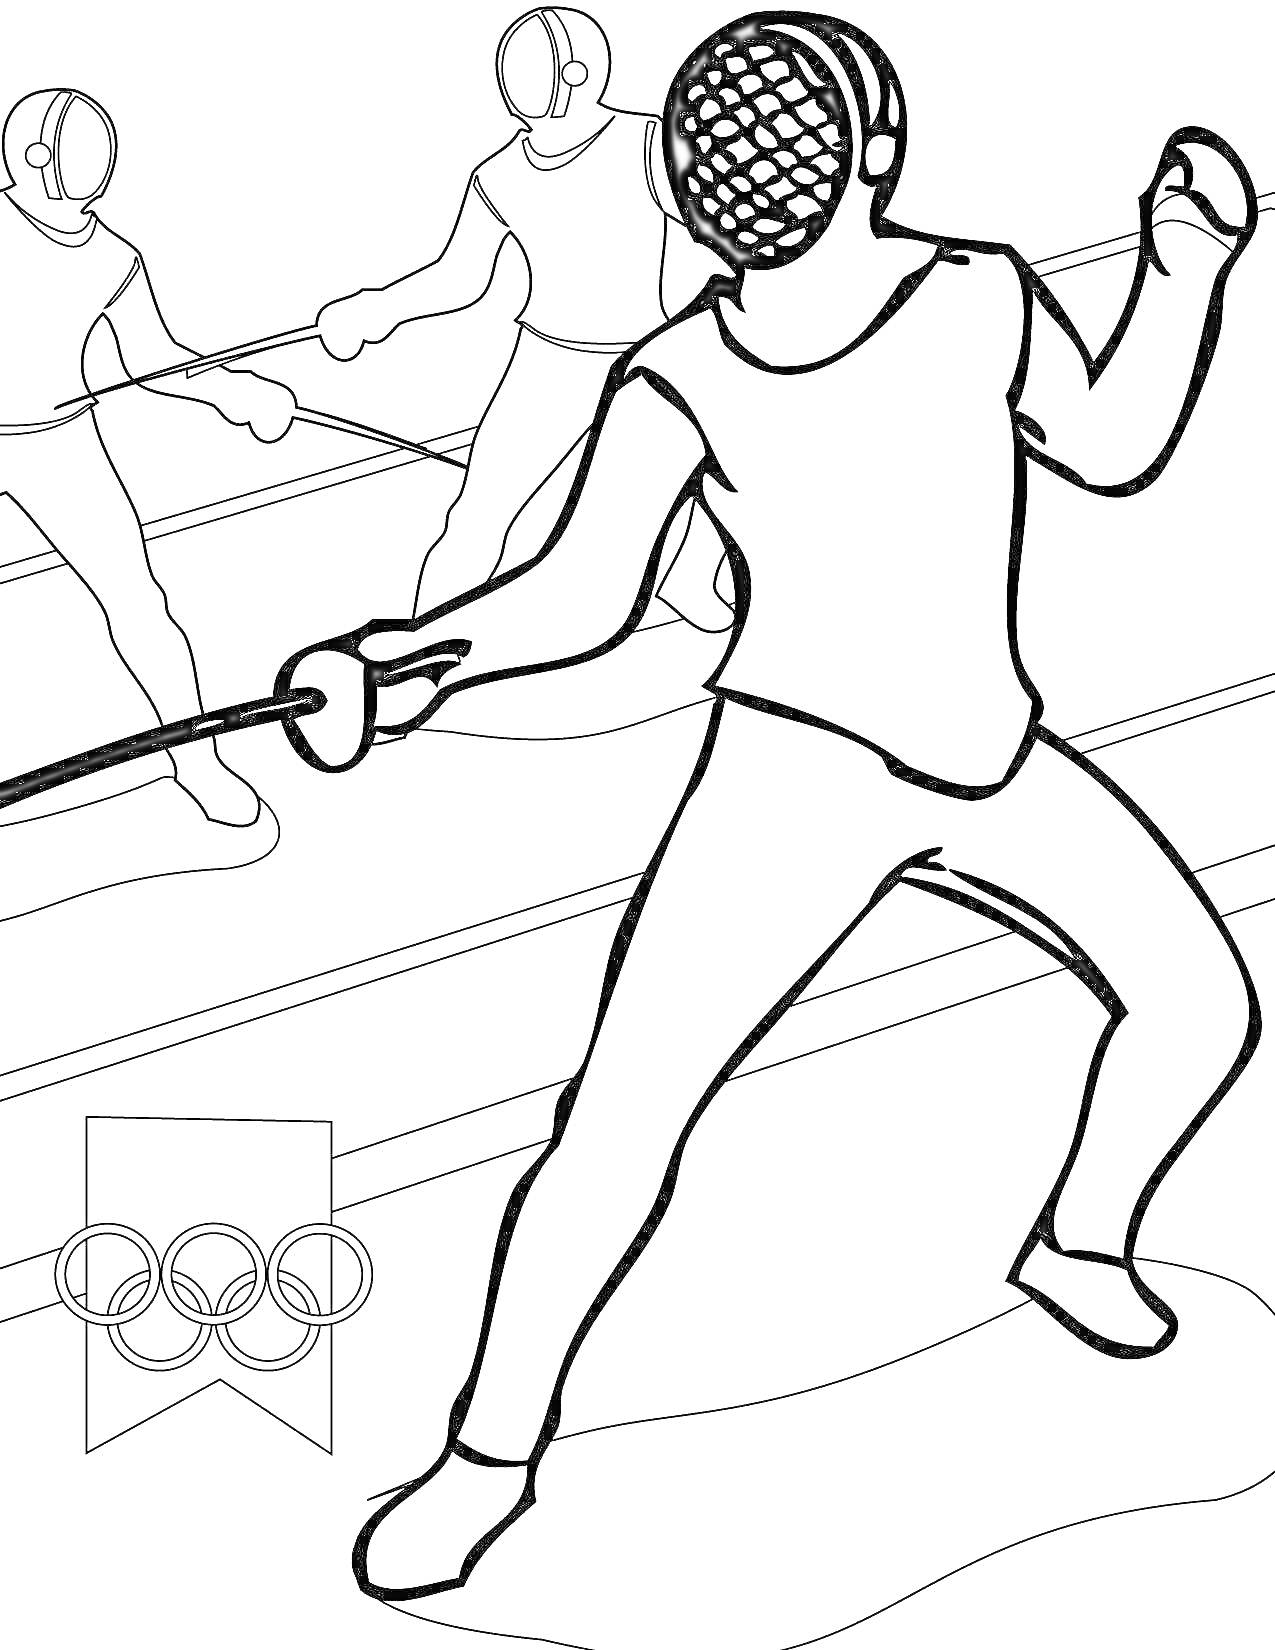 Раскраска Фехтование на соревнованиях с логотипом Олимпийских игр